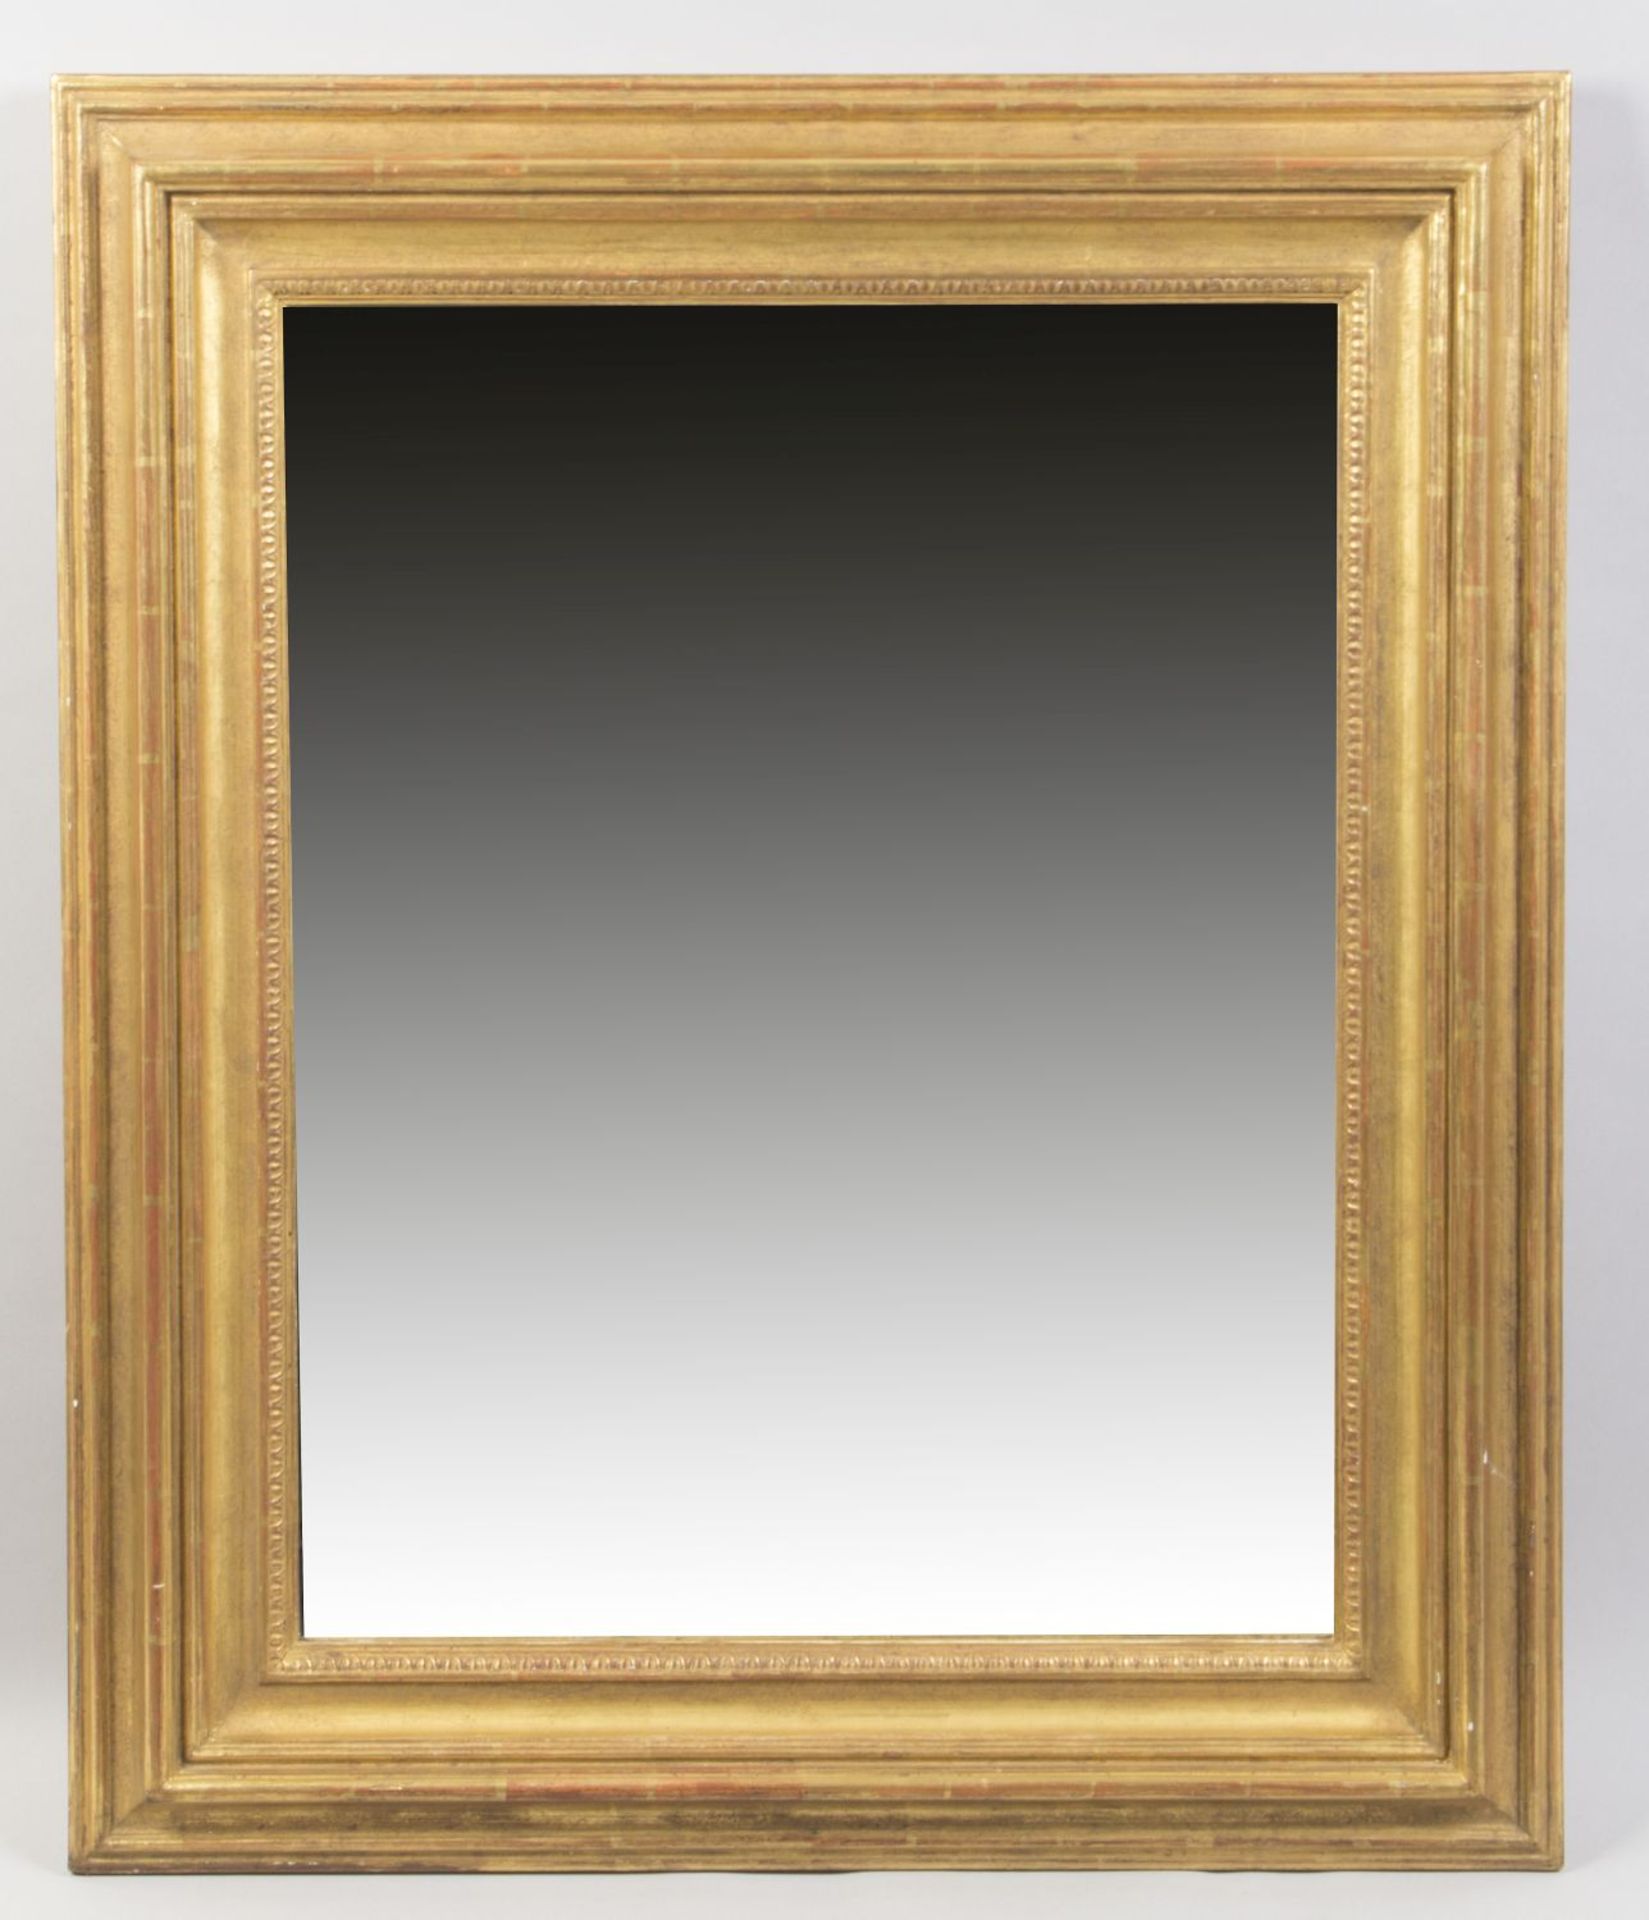 Zwei Wandspiegel Profilierte Holzrahmen. Goldfassung. 92 x 78 cm bzw. 90 x 75 cm. 1 Ex. besch. - Bild 2 aus 3